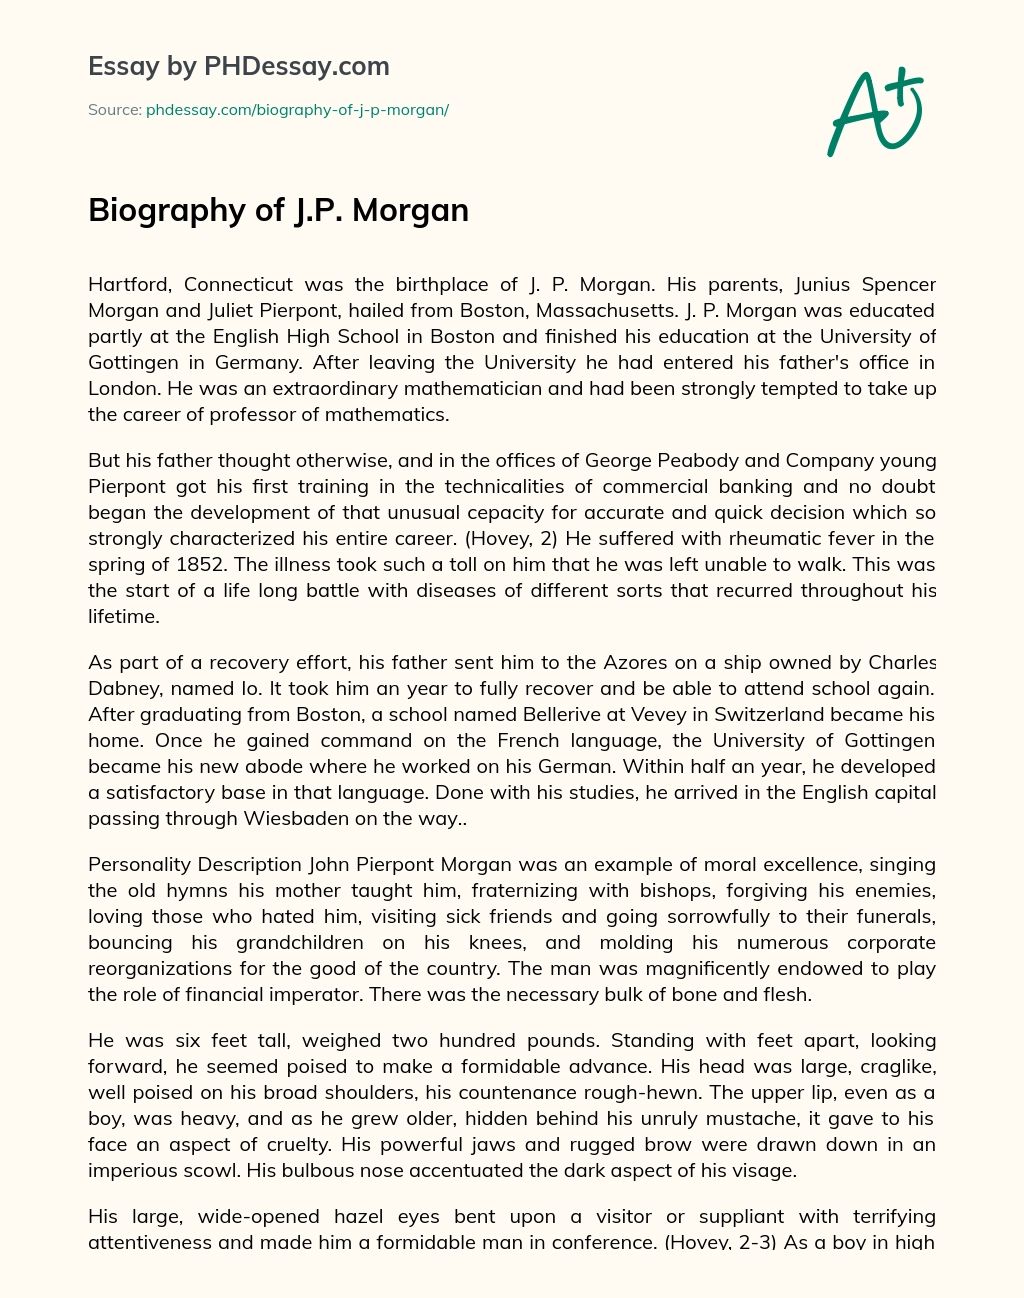 Biography of J.P. Morgan essay